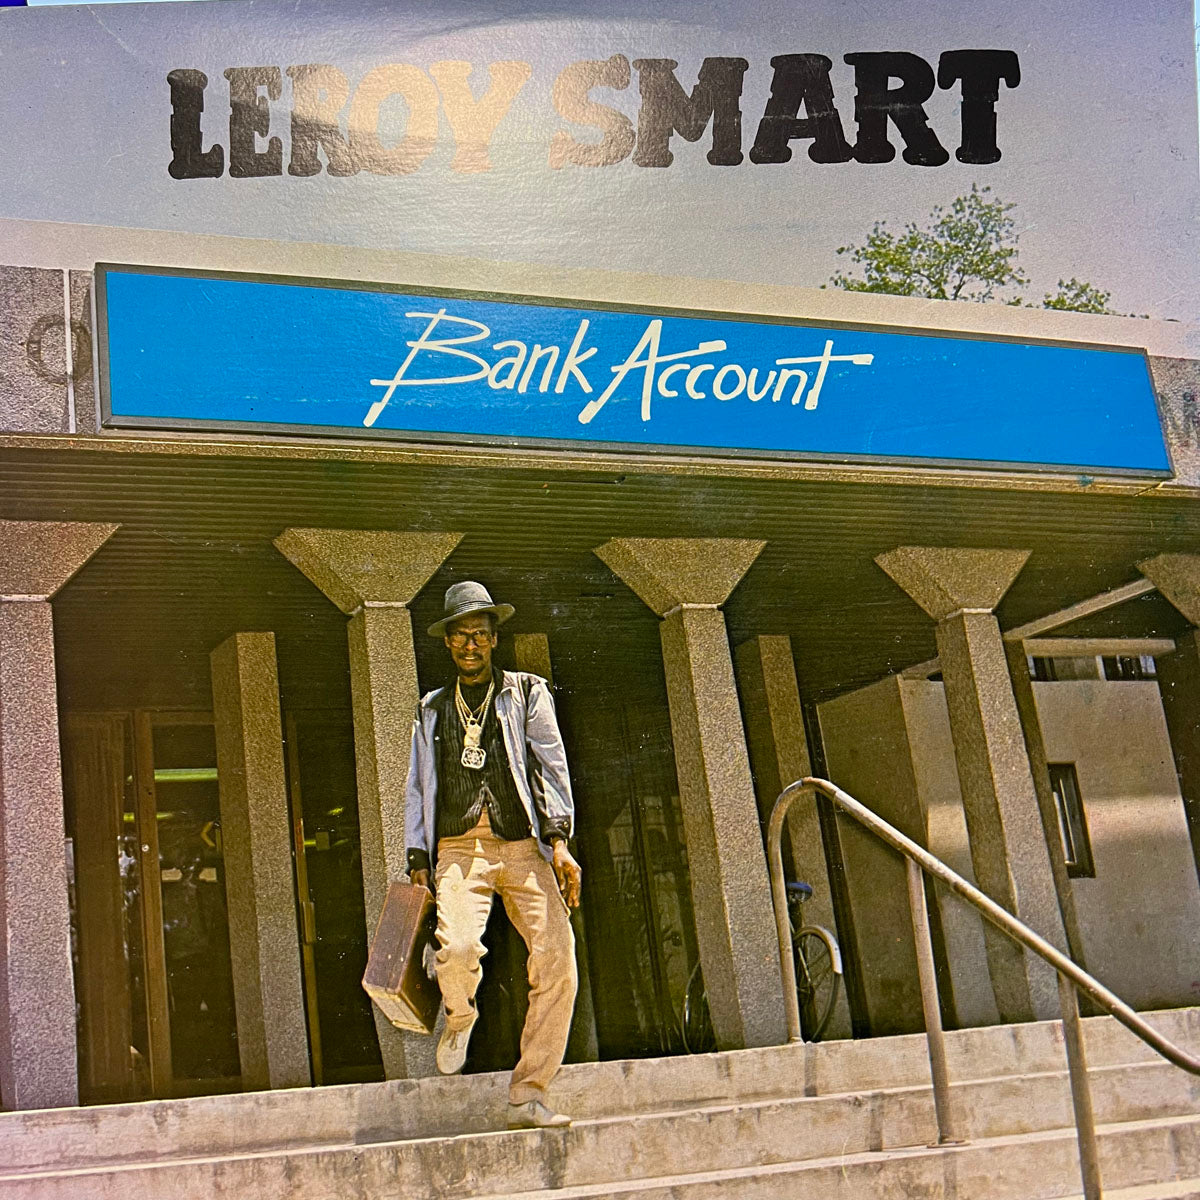 LEROY SMART / BANK ACCOUNT